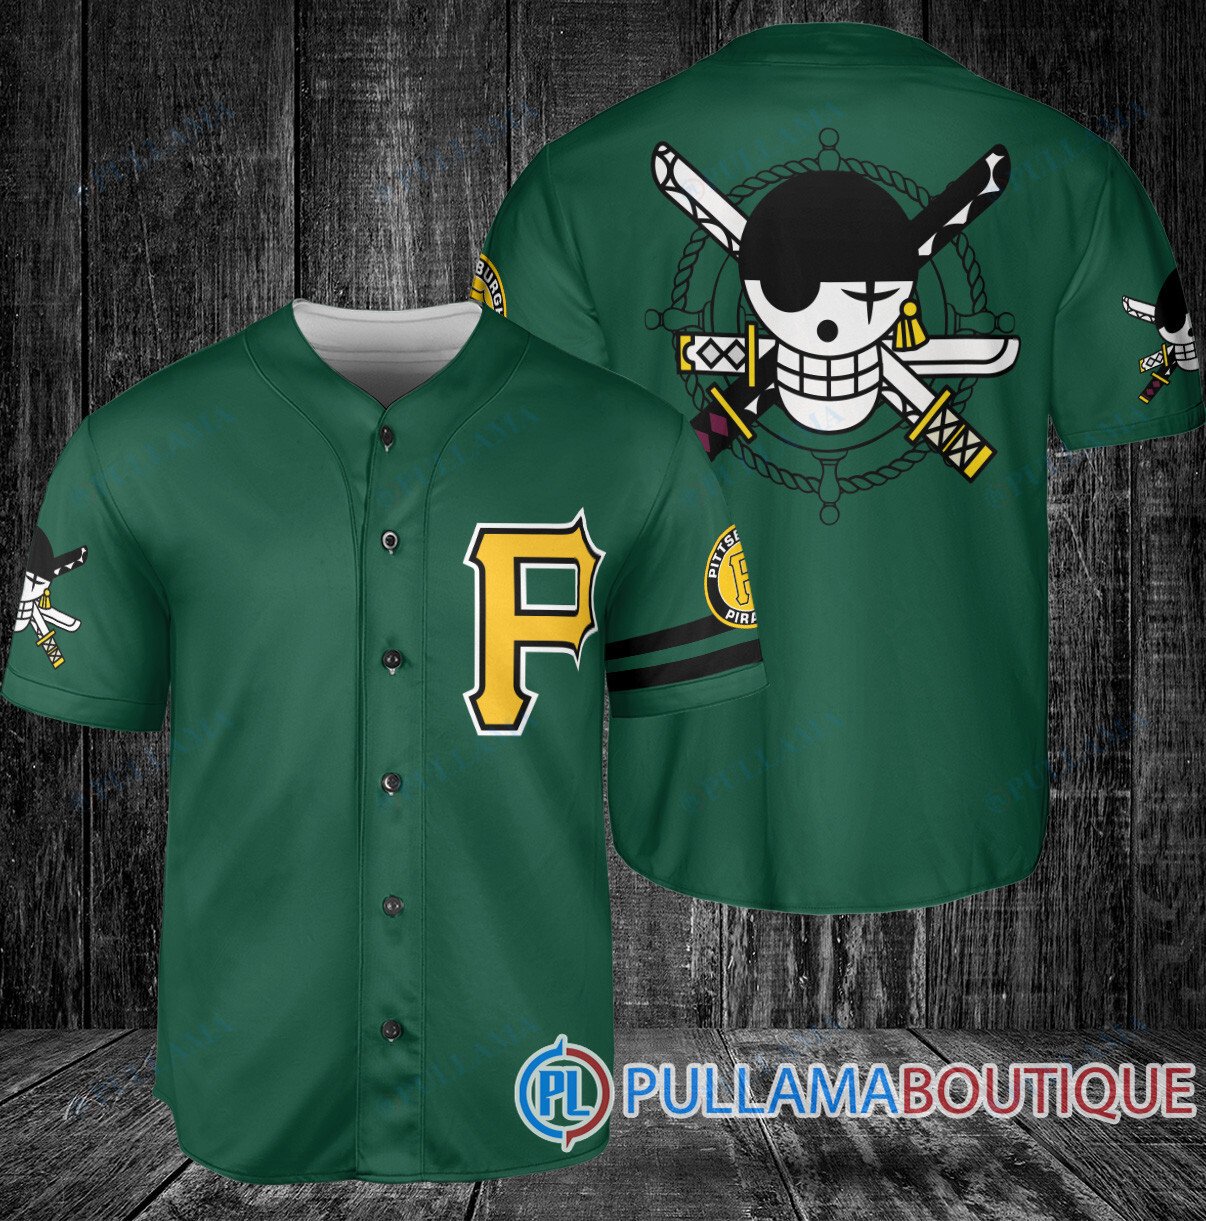 pittsburgh pirates baseball jersey